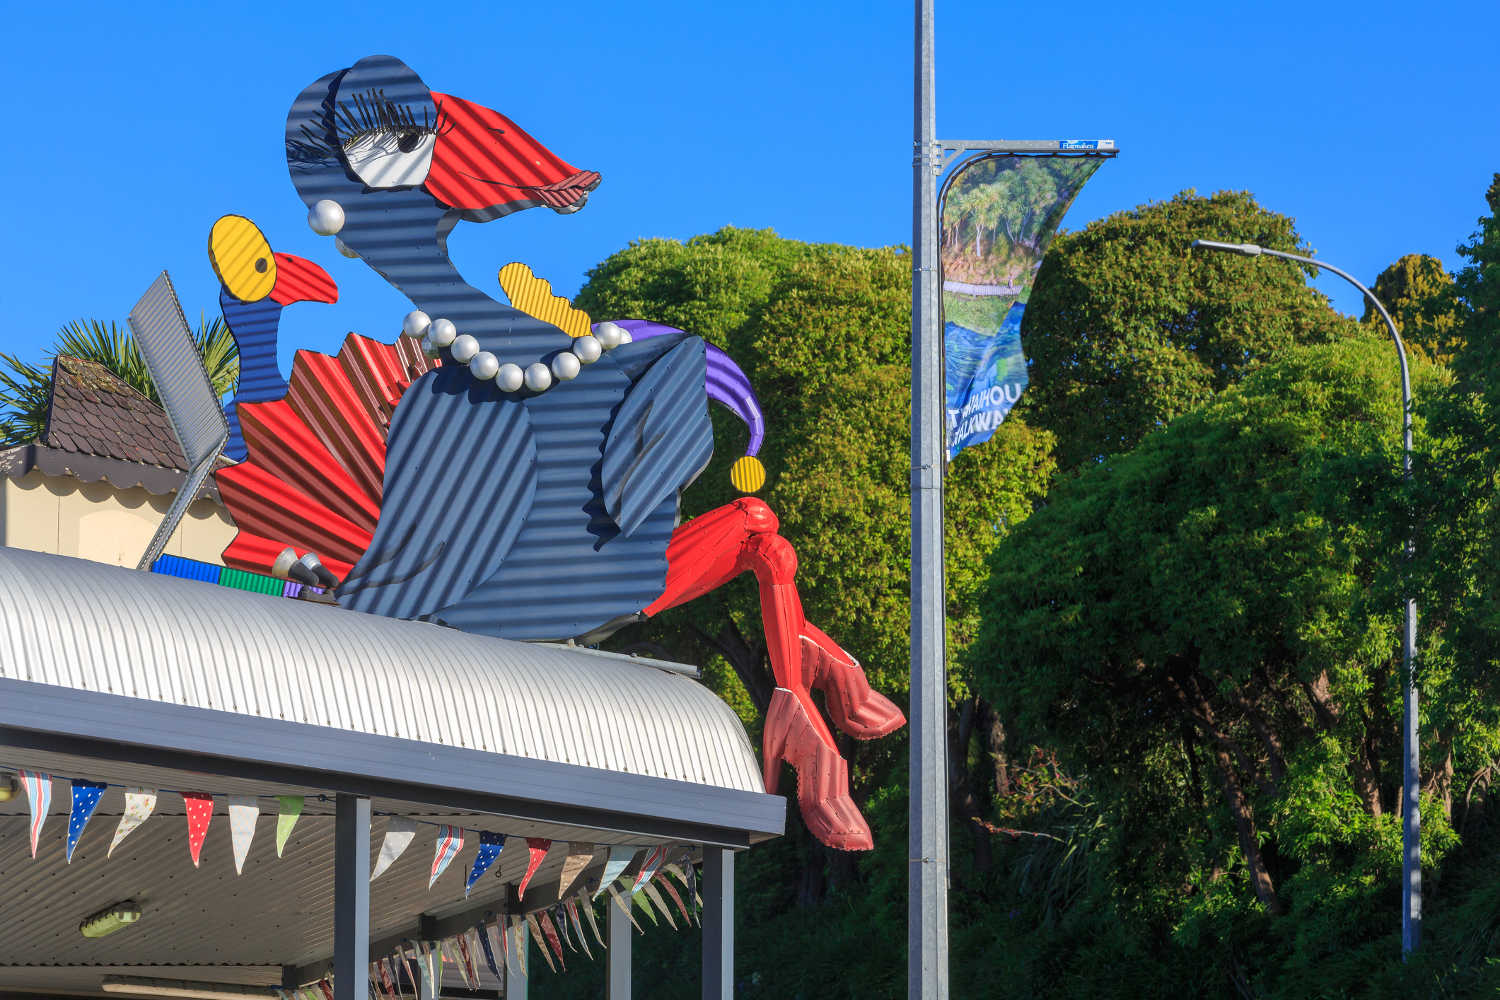 Corrugated iron pukeko sculpture in Tirau, New Zealand